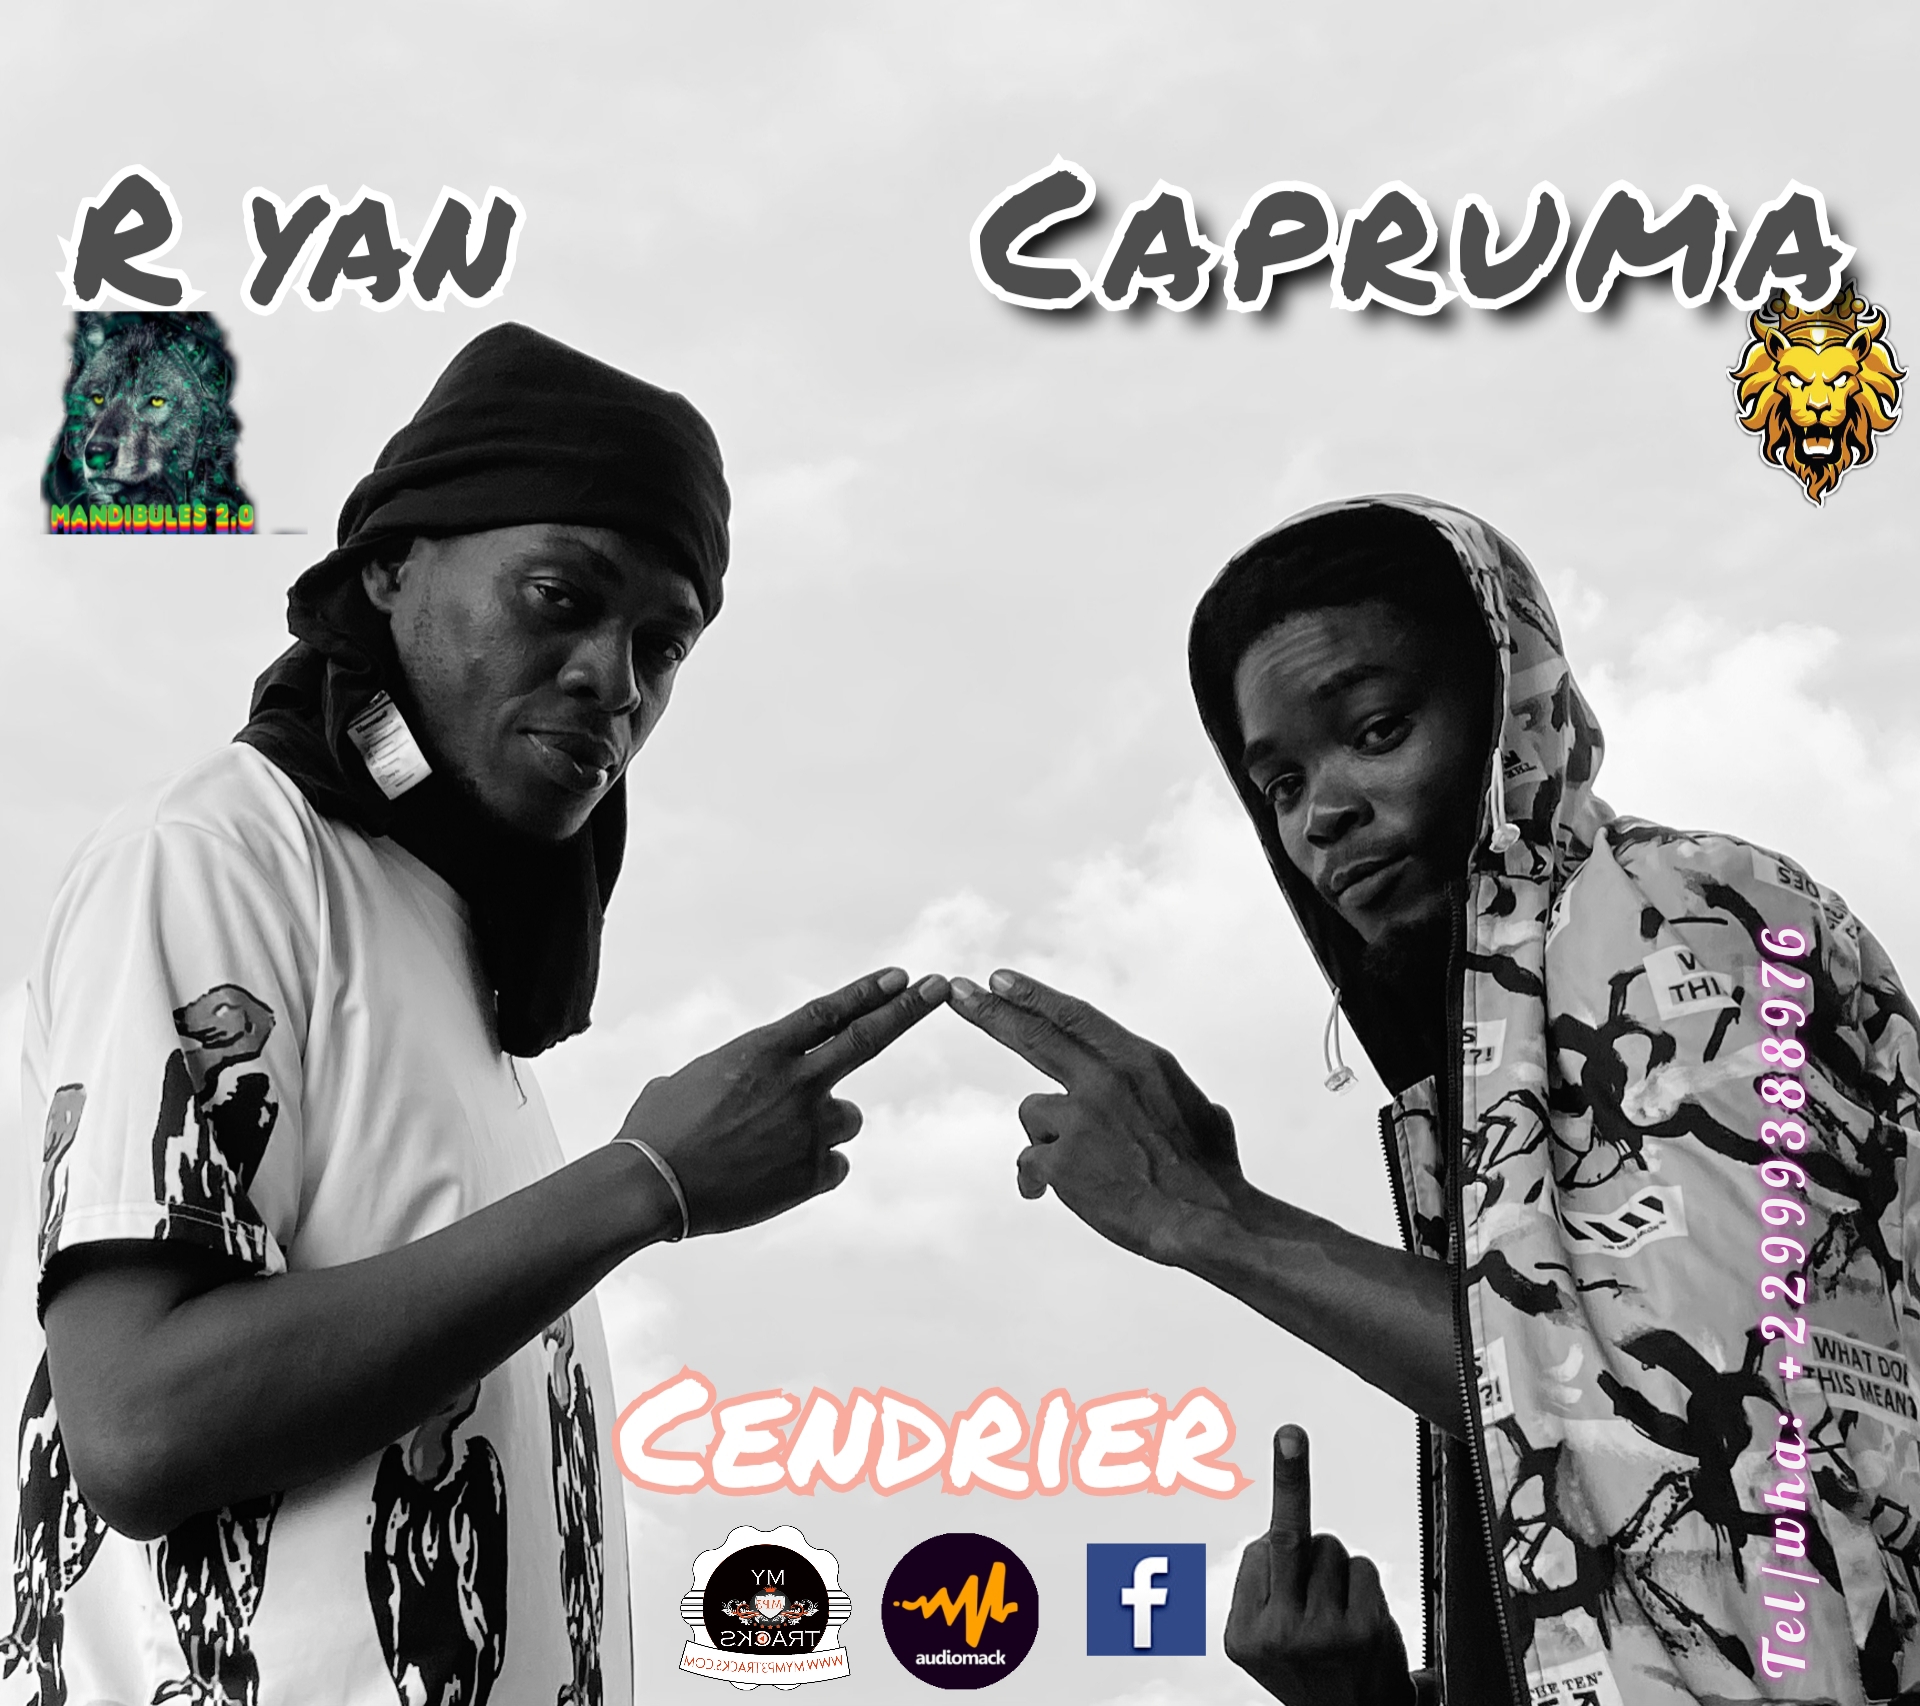 Capruma feat R yan-Cendrier